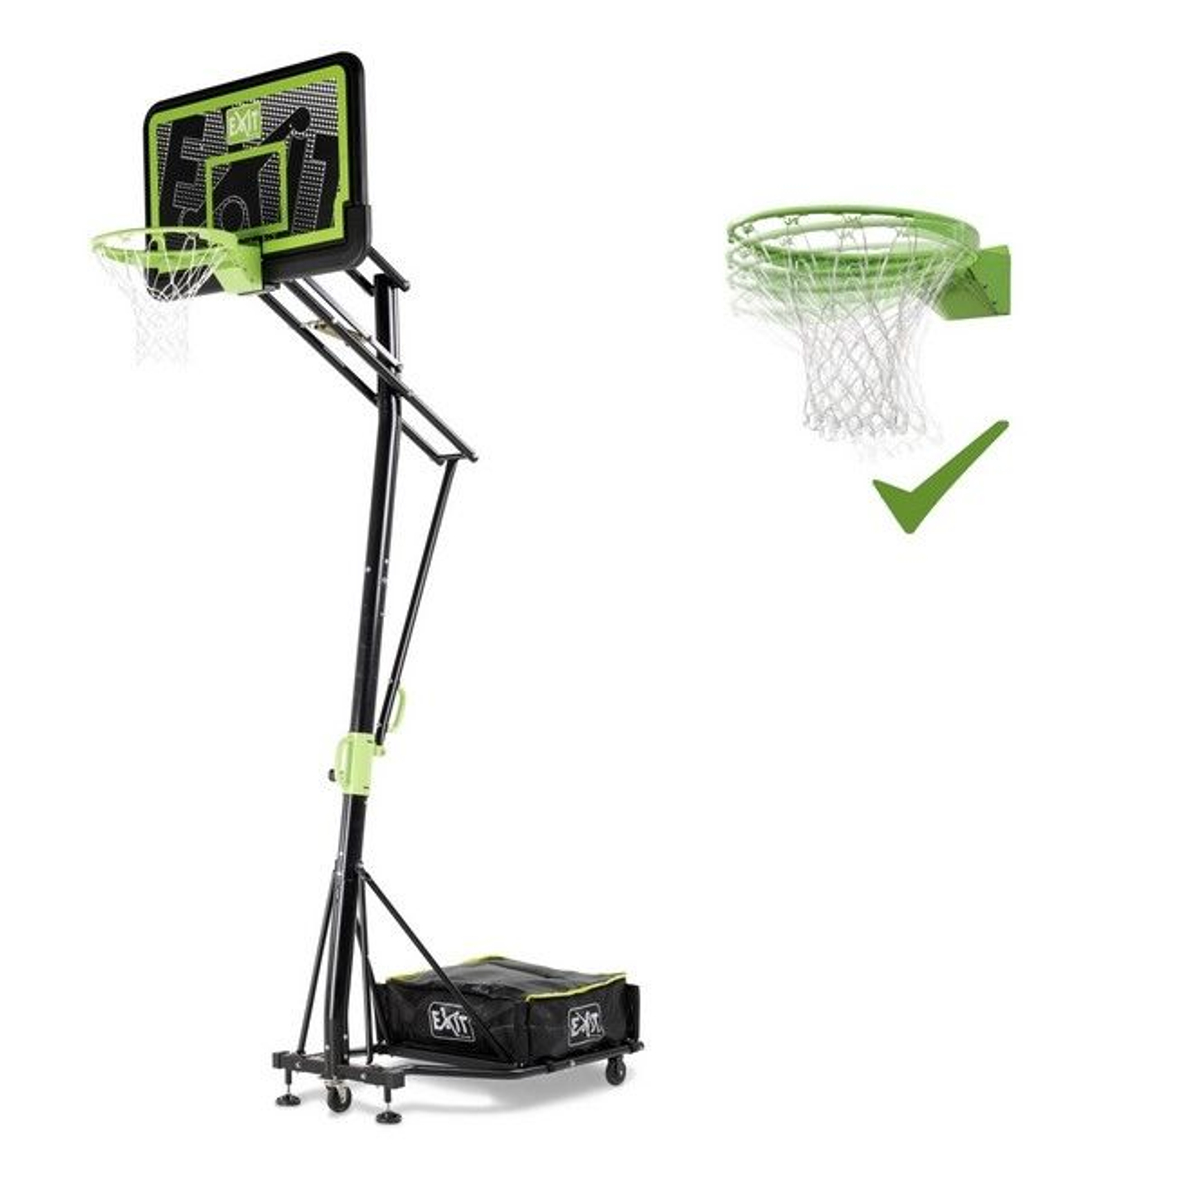 EXIT Galaxy Verplaatsbaar Basketbalbord Op Wielen Met Dunkring - Black Edition